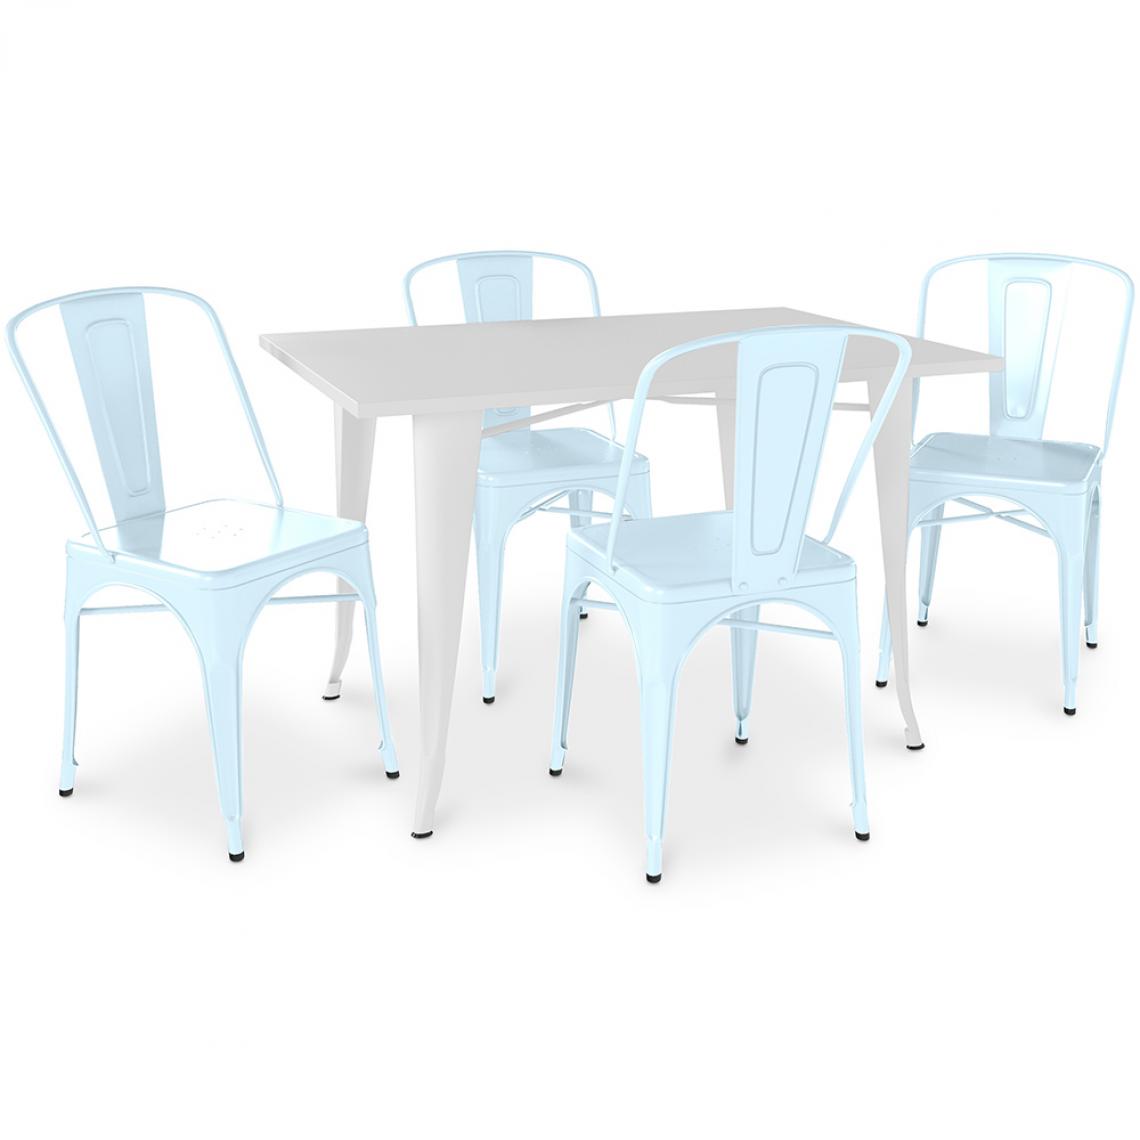 Iconik Interior - Table de salle à manger + 4 chaises de salle à manger Set Bistrot Stylix Design Industriel Métal - Nouvelle Edition Bleu clair - Chaises